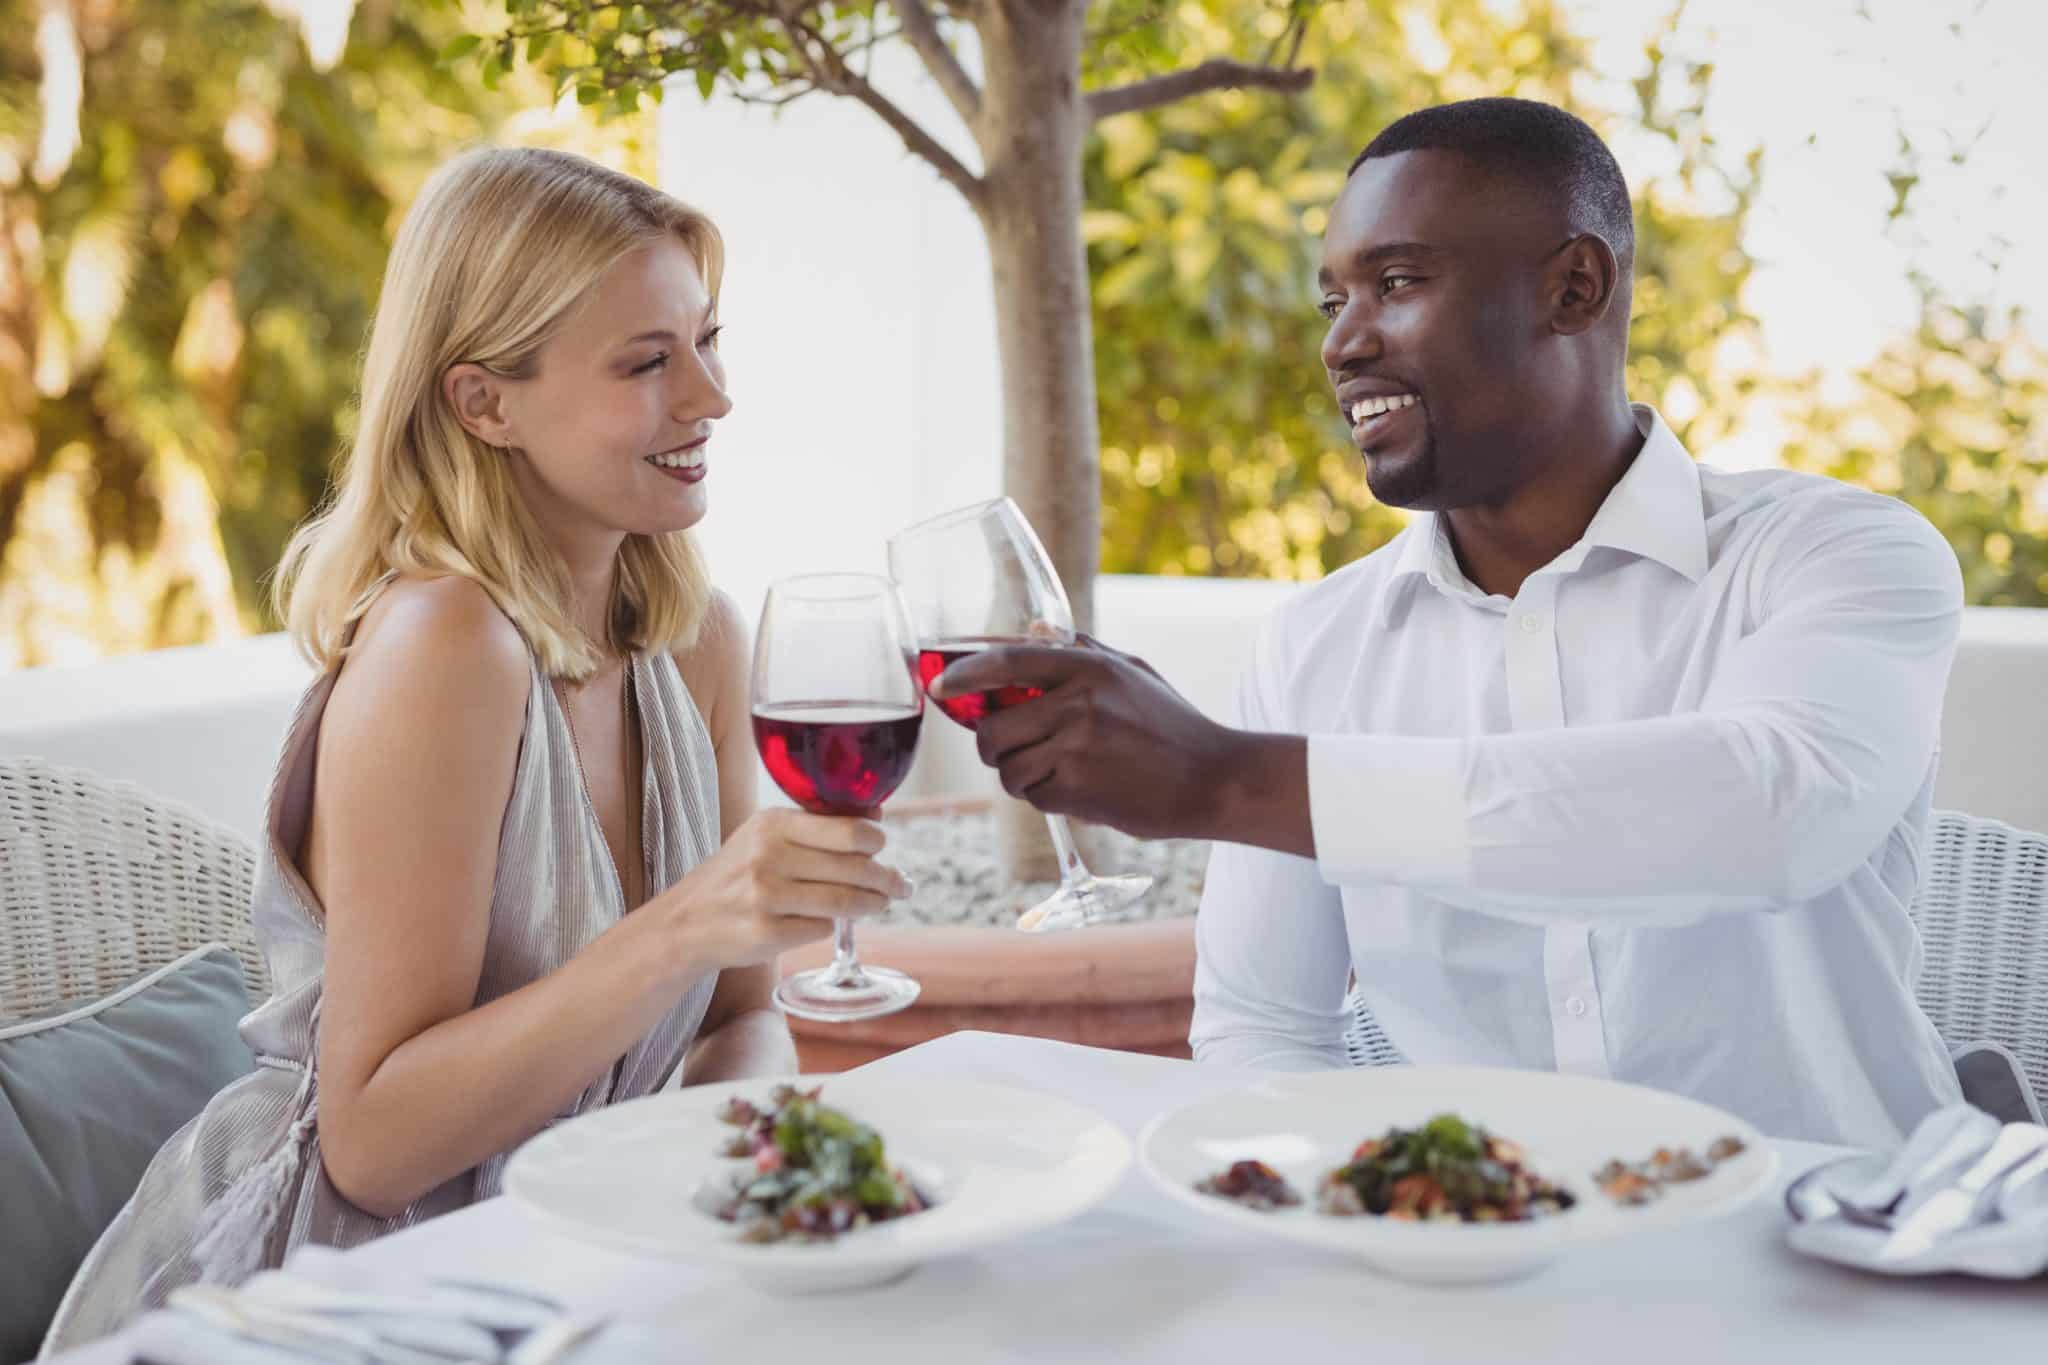 Plat avec du vin Haut Médoc : conseils pour une expérience culinaire inoubliable